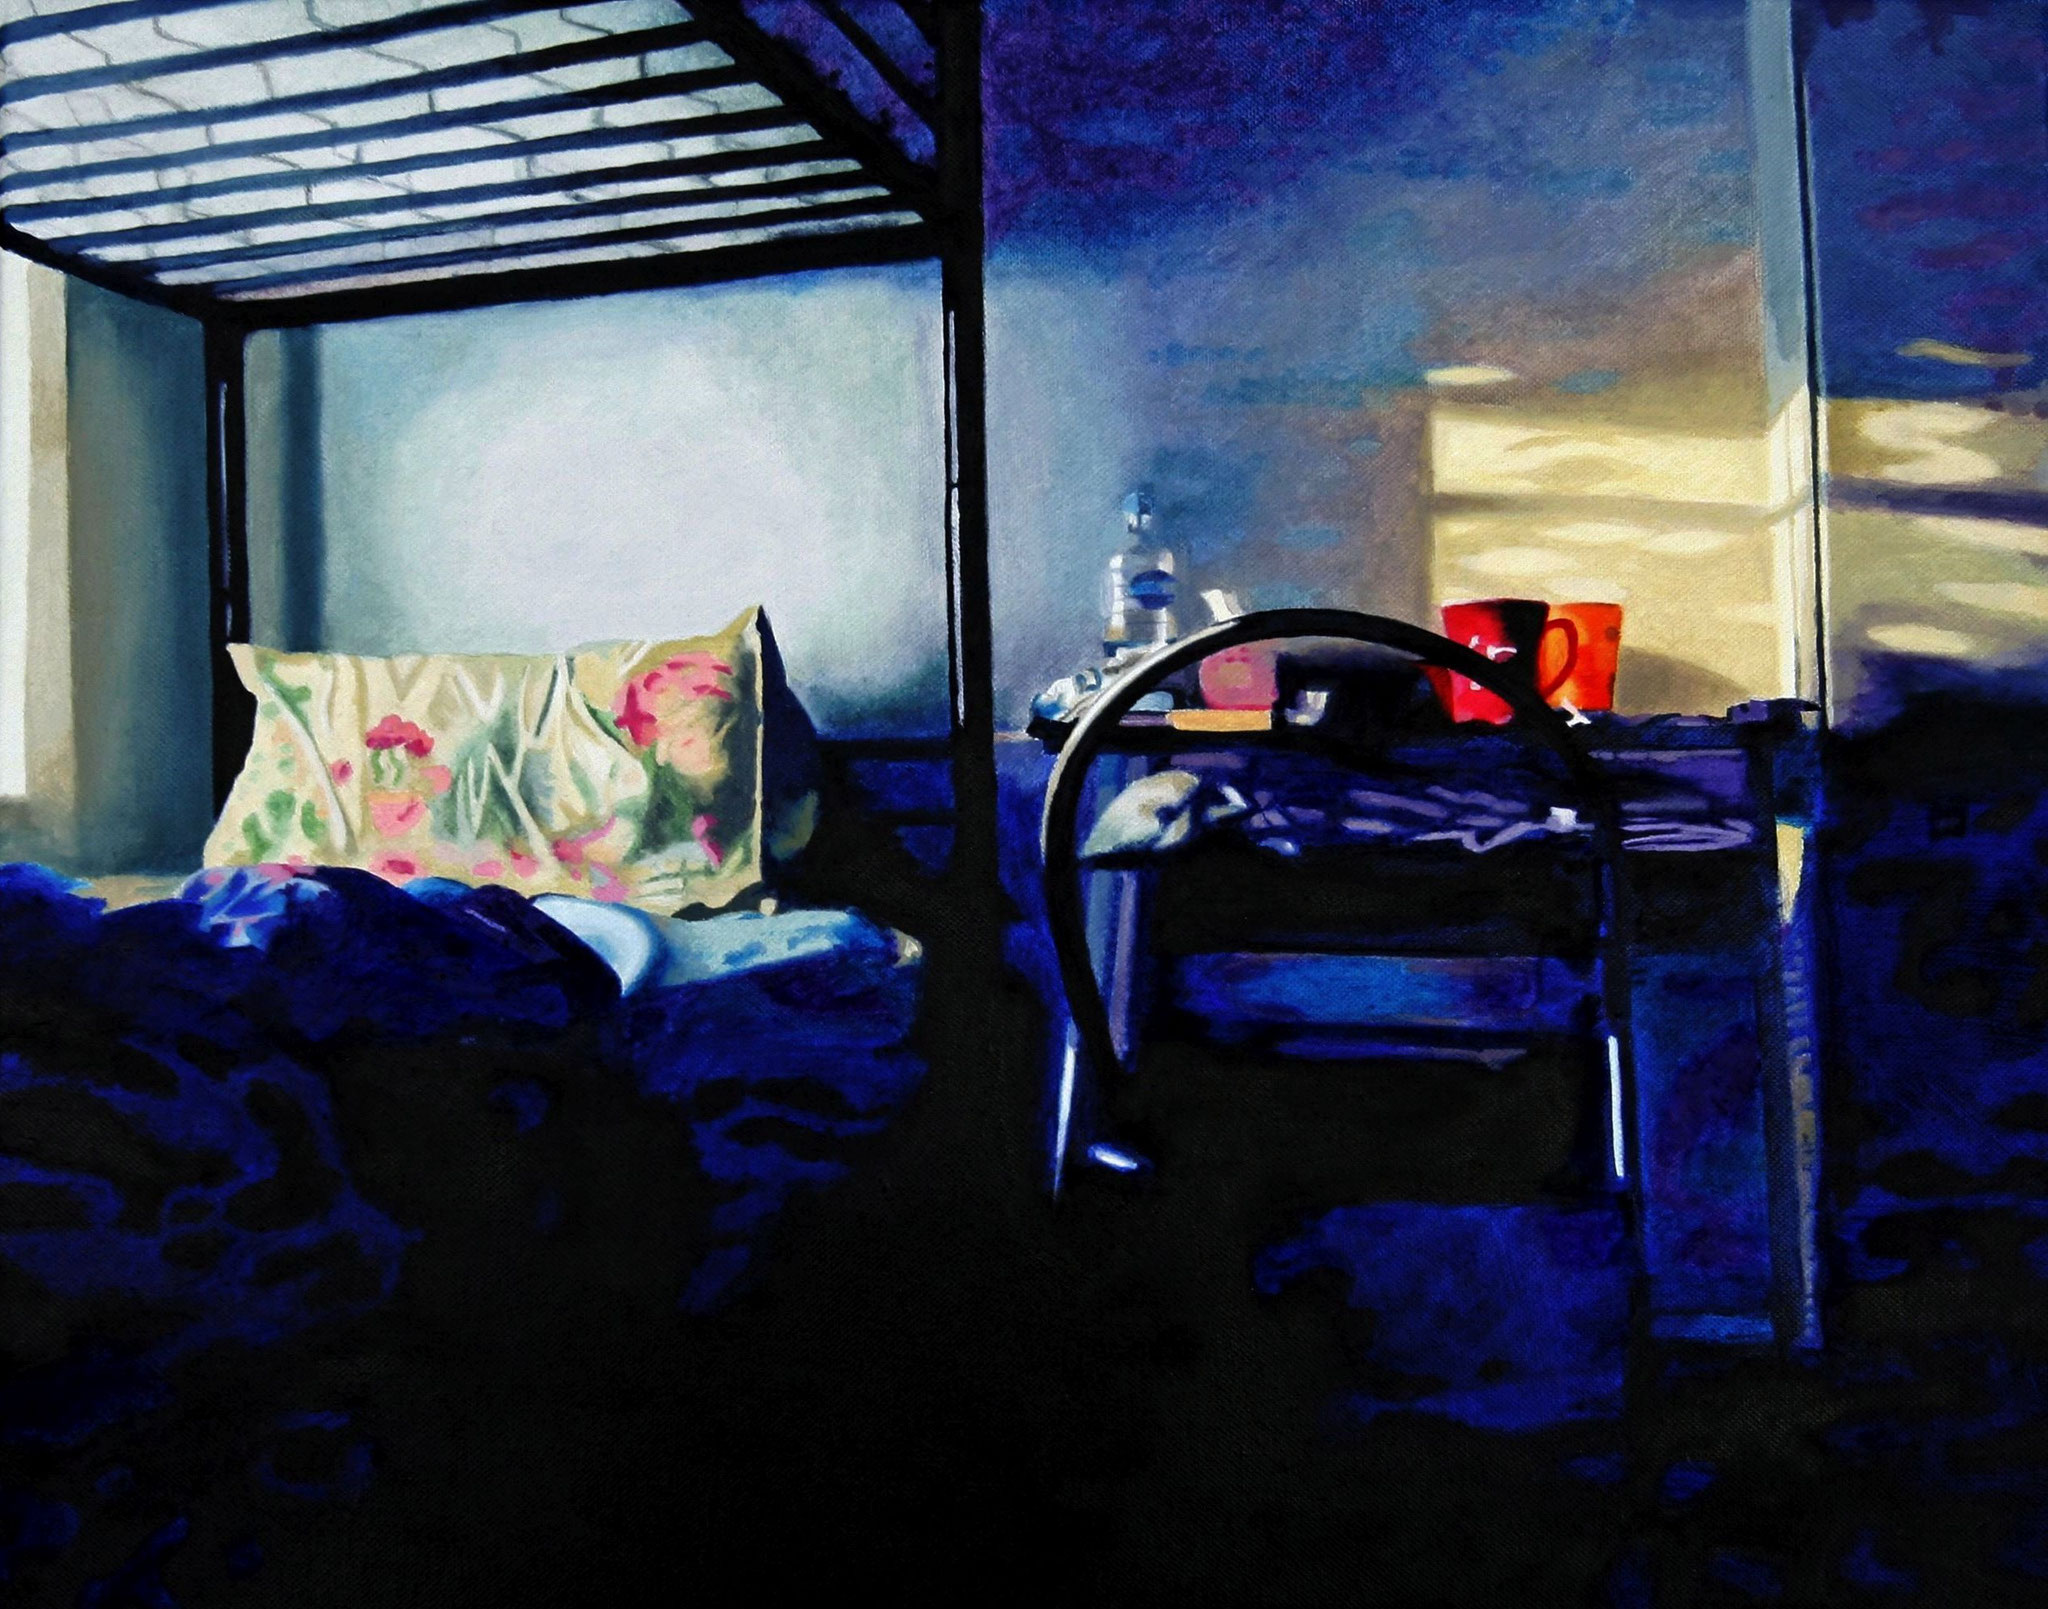 Sharehouse-Room, Oil on Canvas, 50 x 40 cm